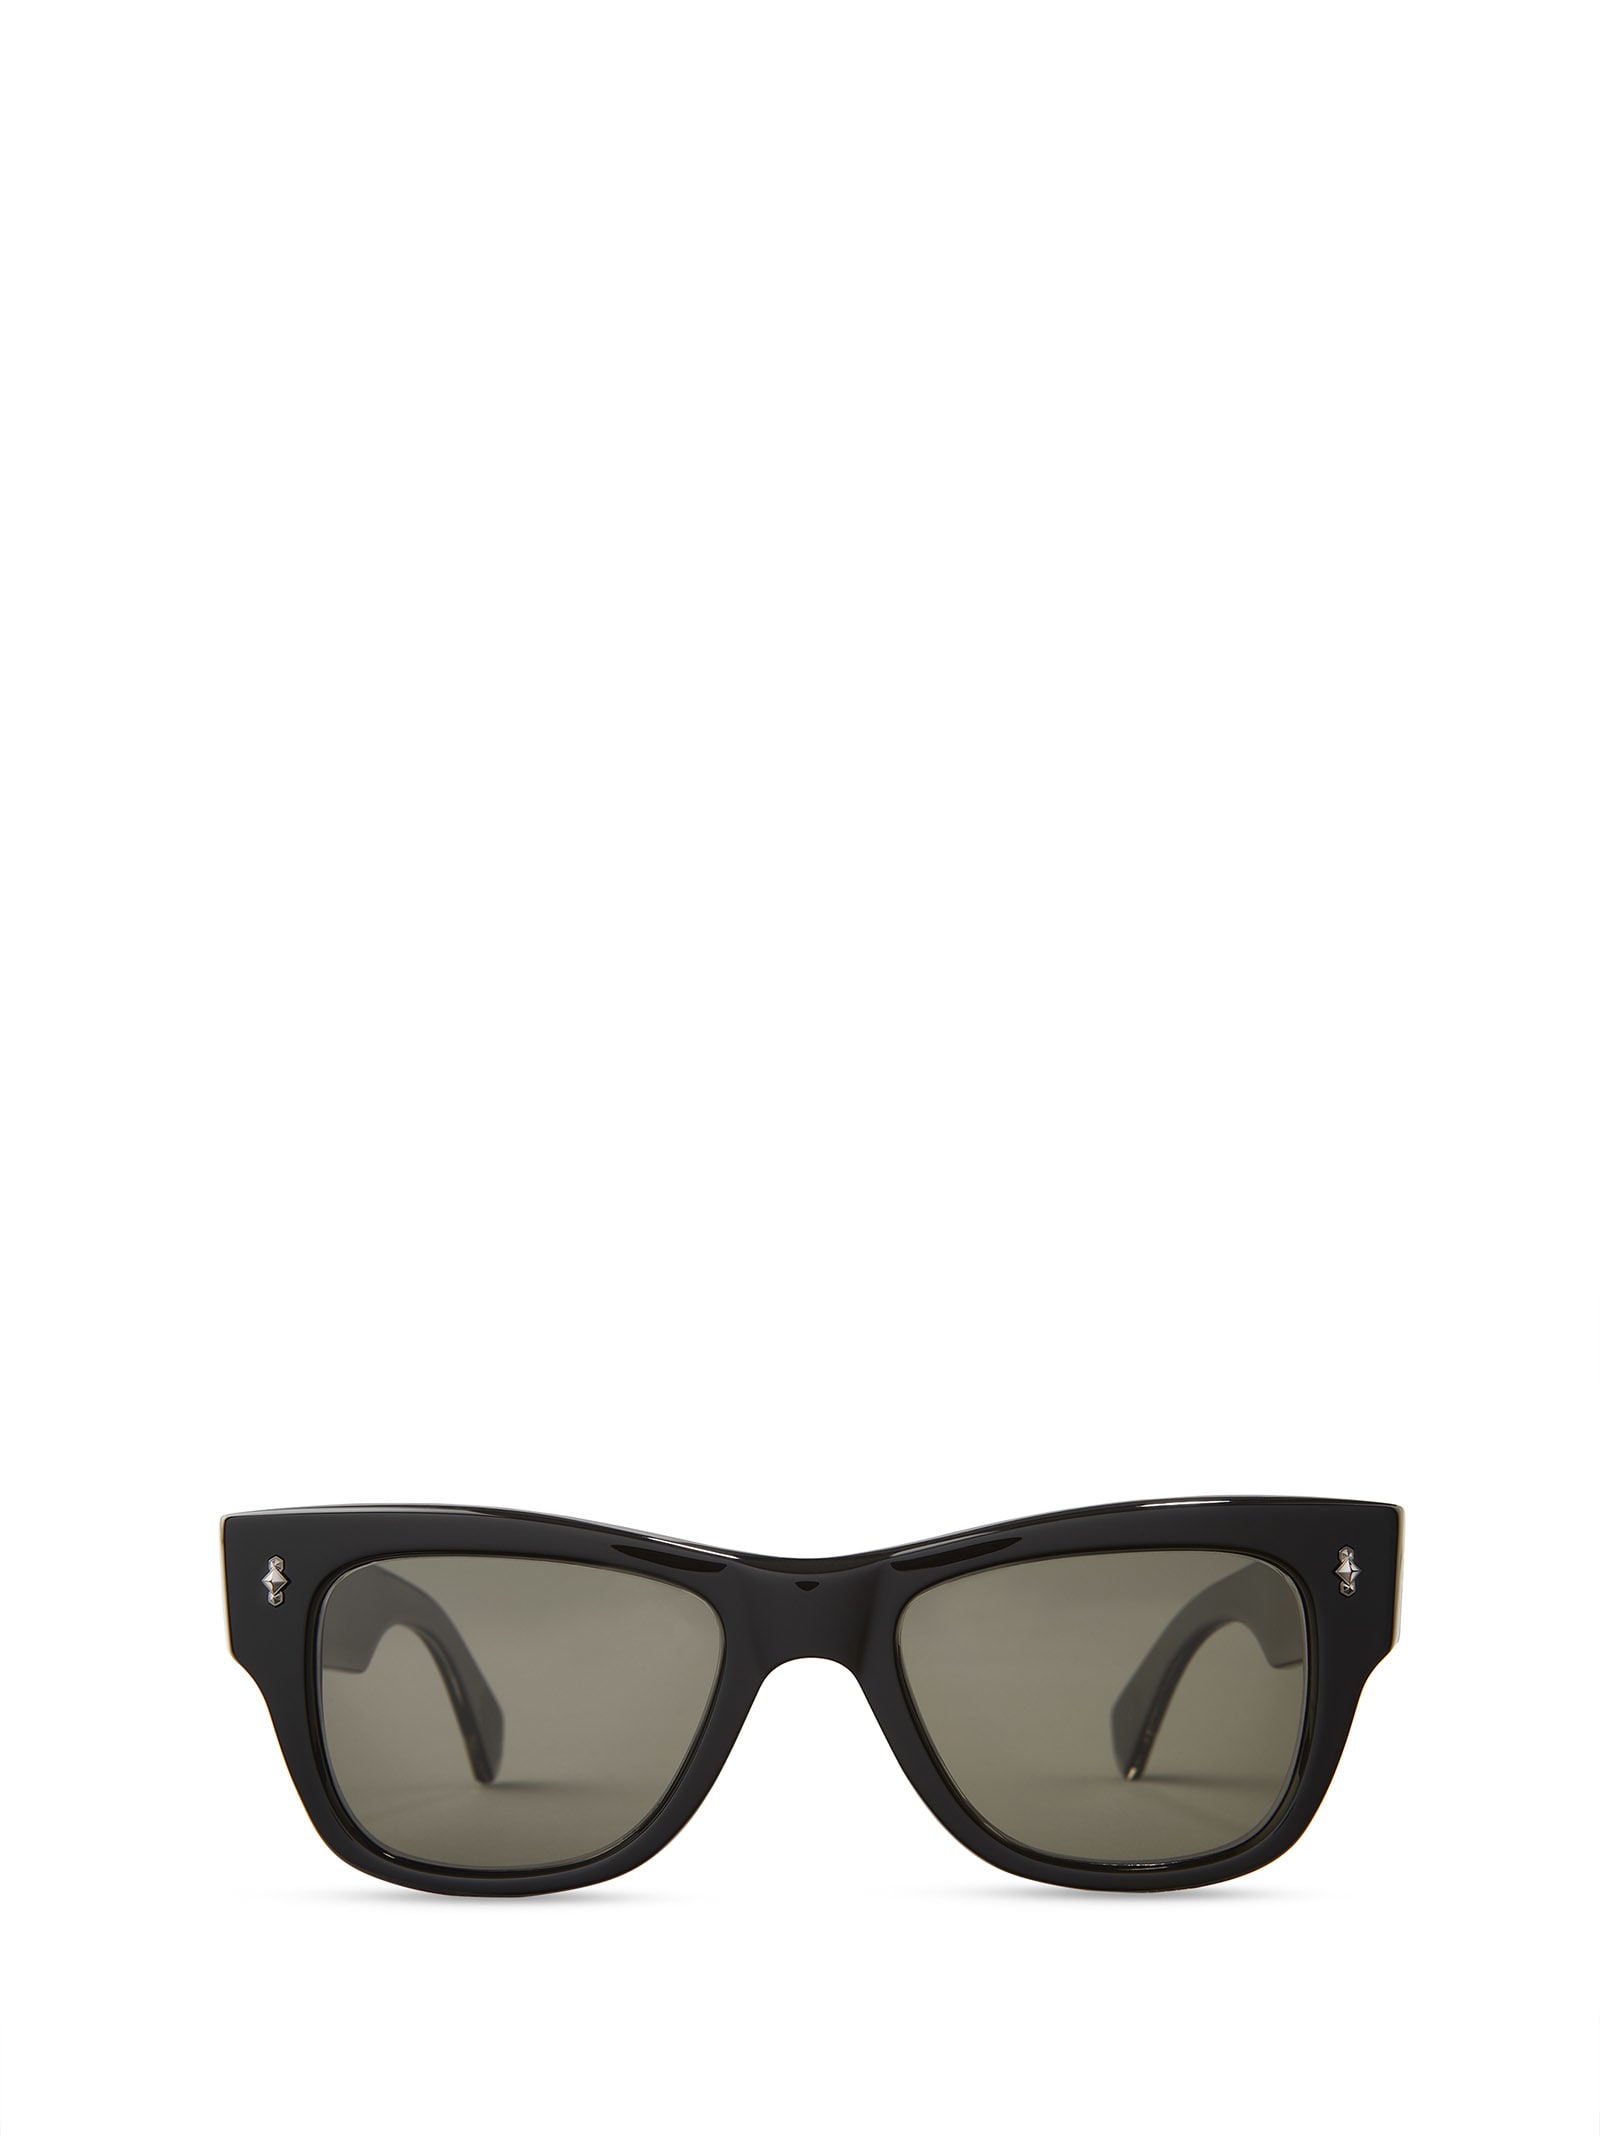 Mr Leight Duke S Black-gunmetal Sunglasses